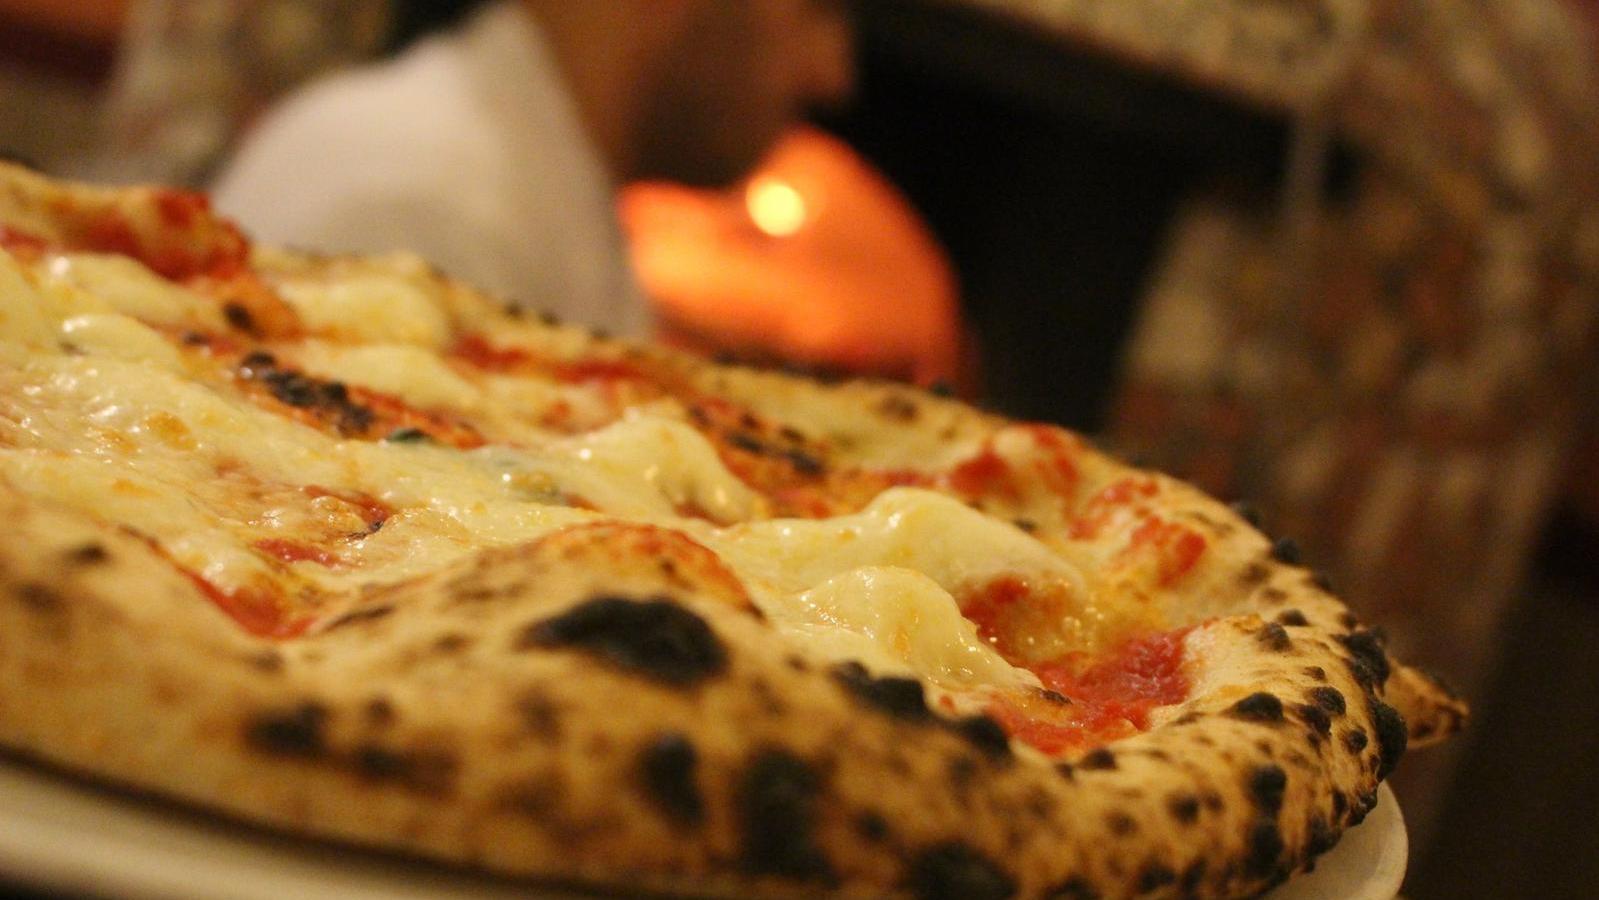 Miglior pizzeria a Foggia - Pizzeria da Brigida | Localtourism.it